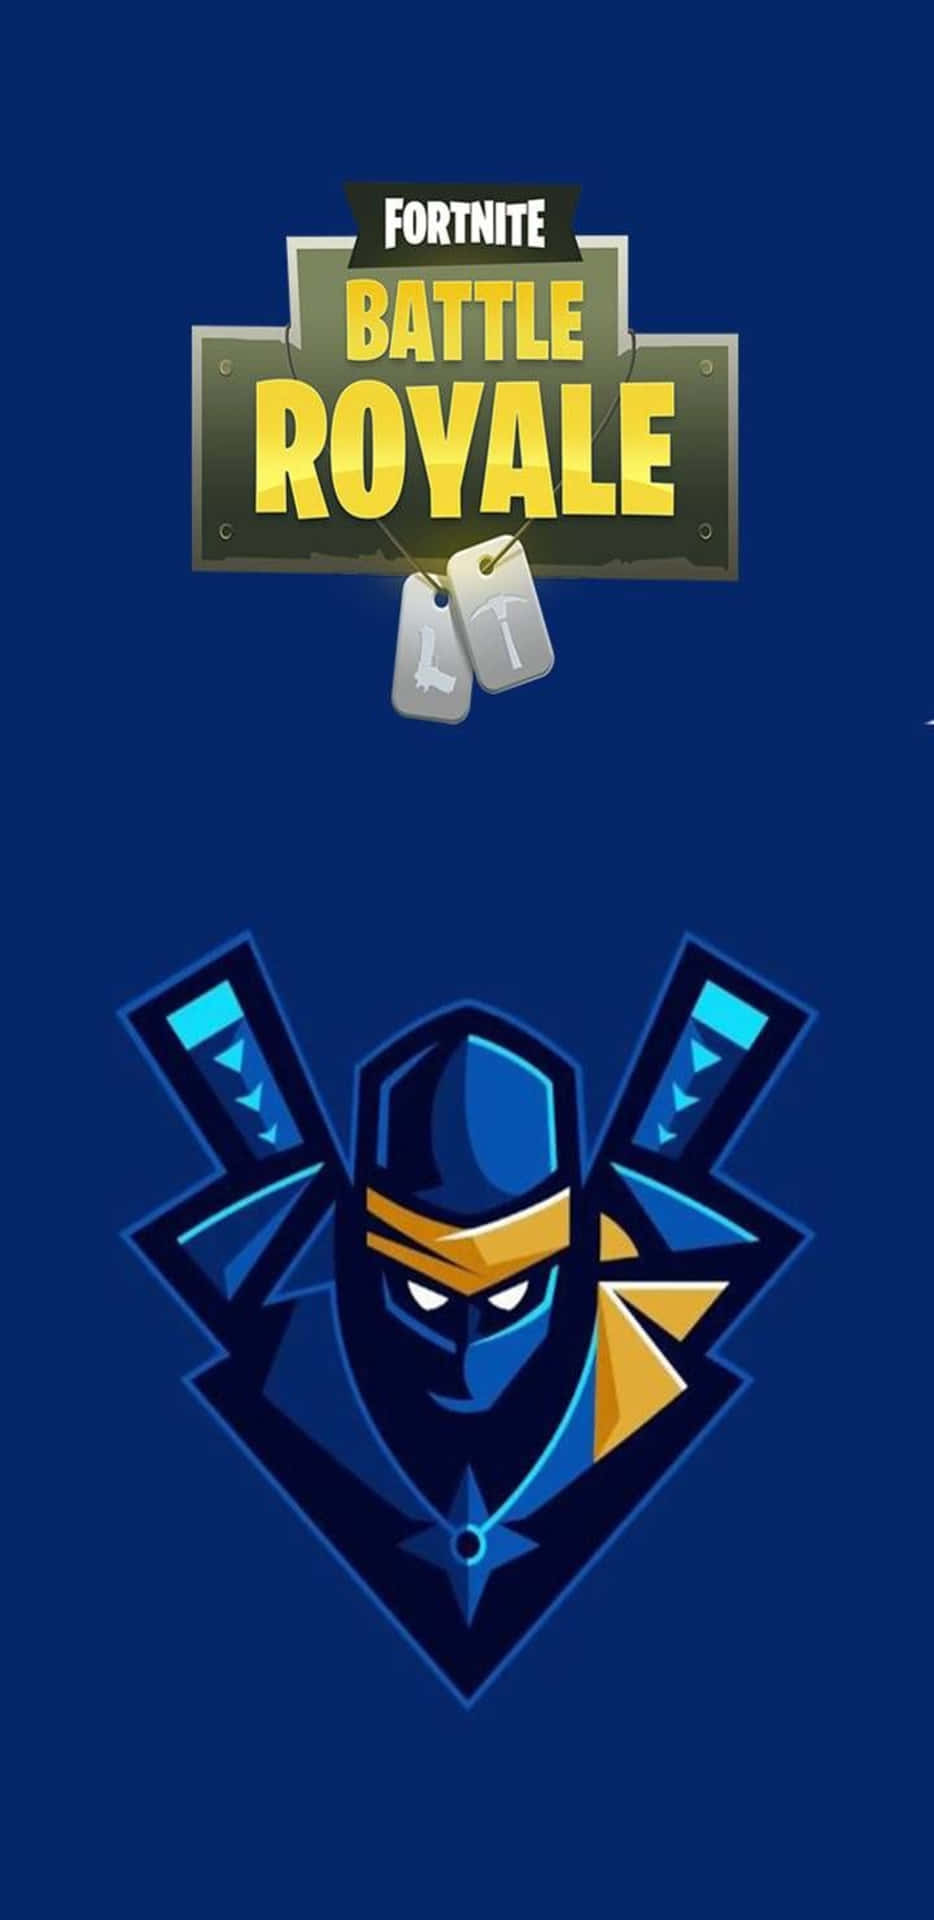 Fondode Pantalla Pixel 3xl Con El Logotipo Del Ninja De Fortnite Battle Royale.